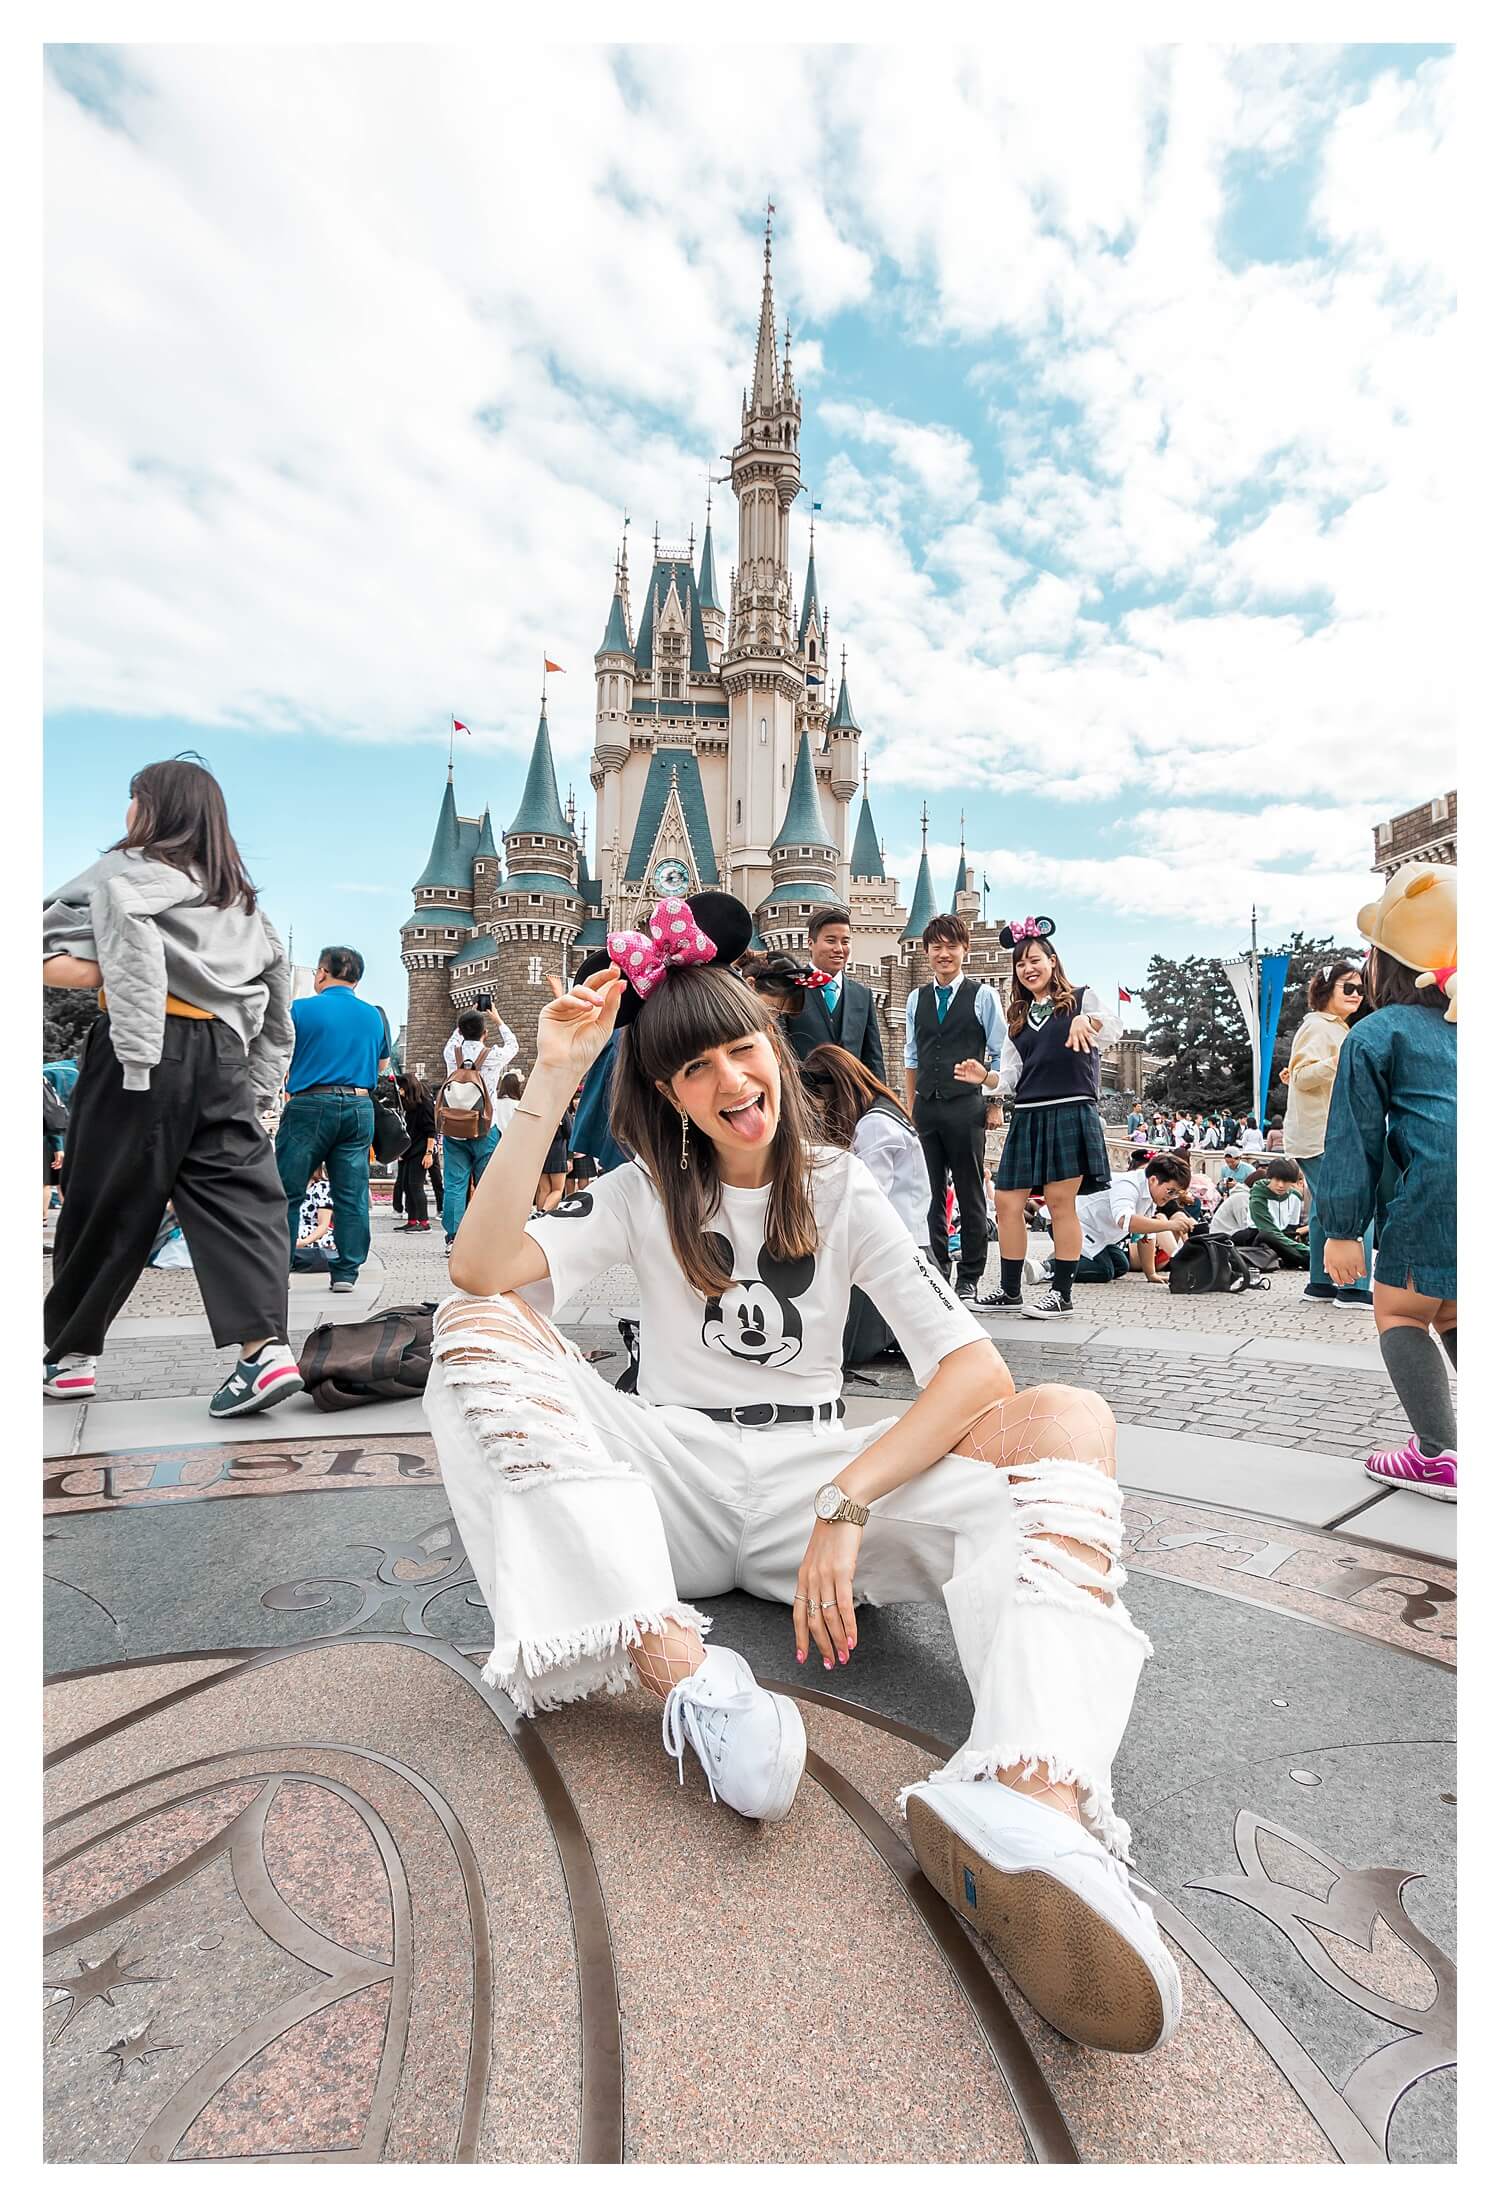 Things To Do In Tokyo, Japan - Disneyland